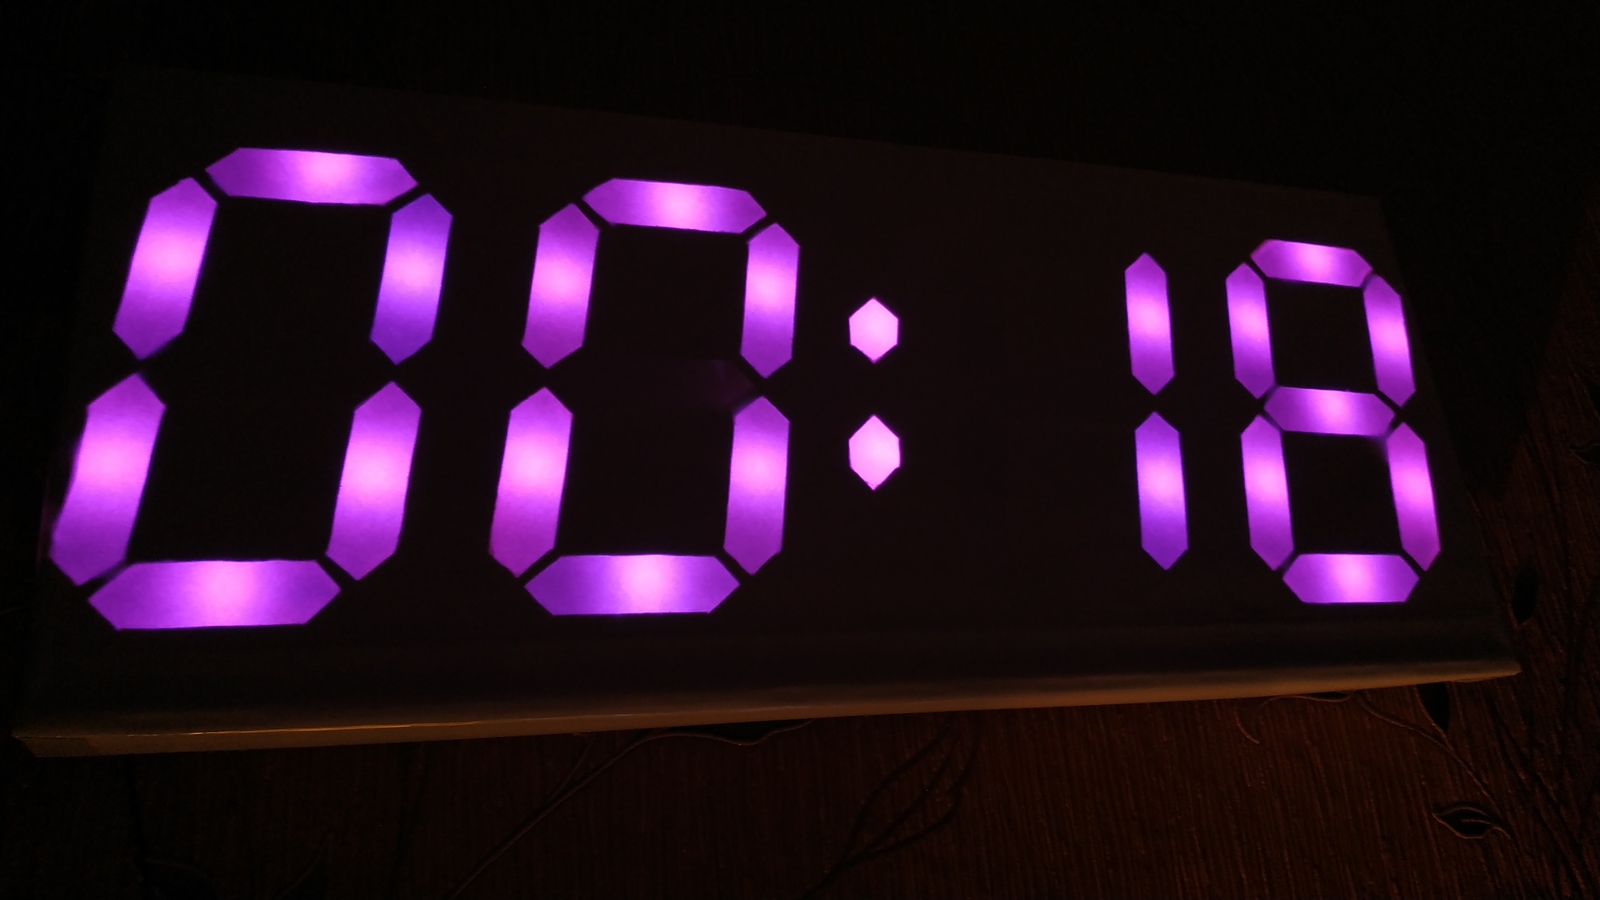 Установить часы на х8. Часы Digital Clock 200730138828.4. Светодиодные часы на ардуино. 7 Segment Digital Clock. Часы на большом 7 сегментном led Arduino.